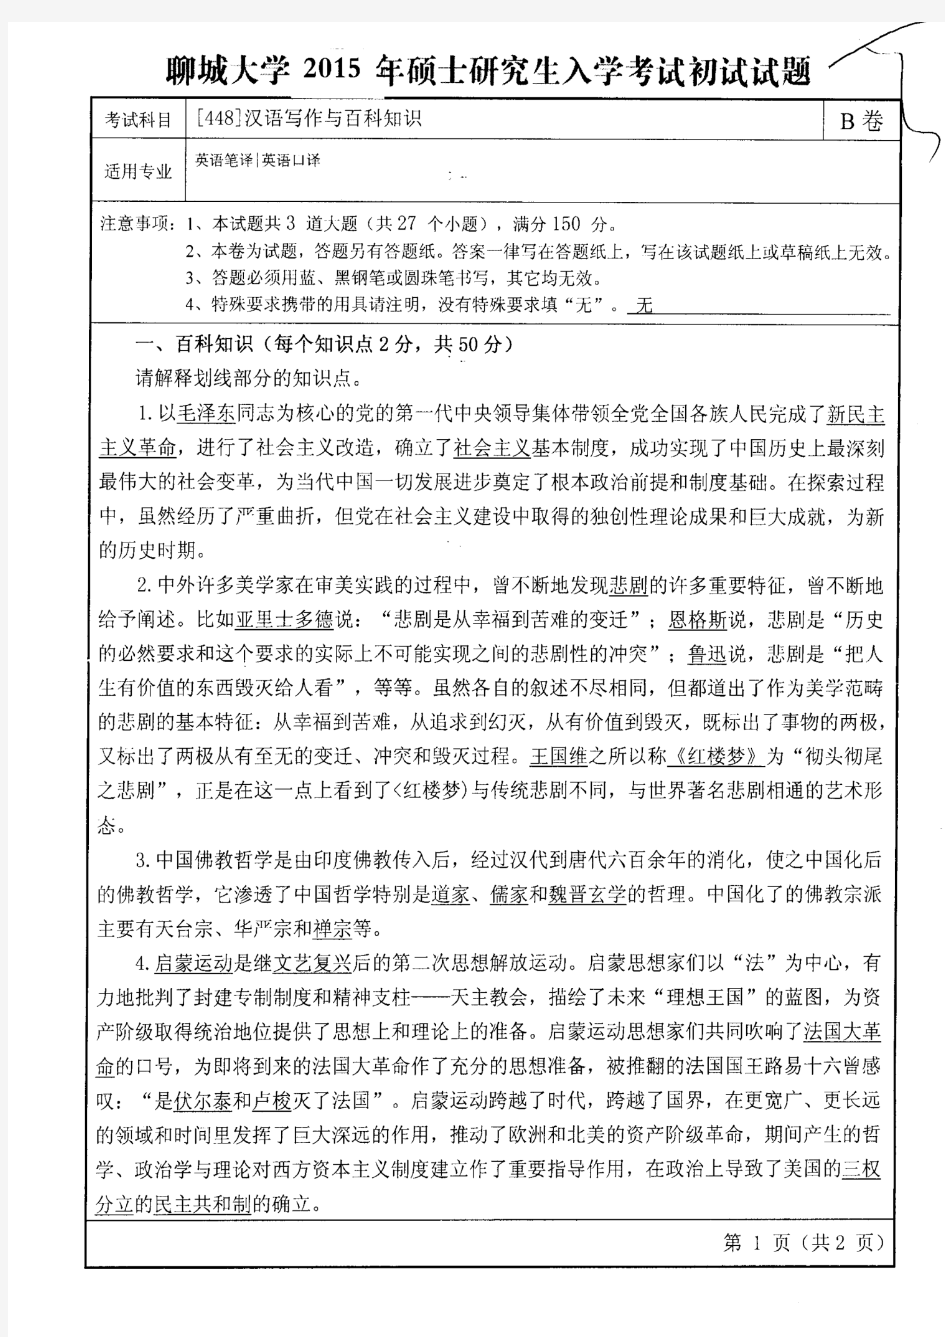 聊城大学2015年《448汉语写作与百科知识》考研专业课真题试卷